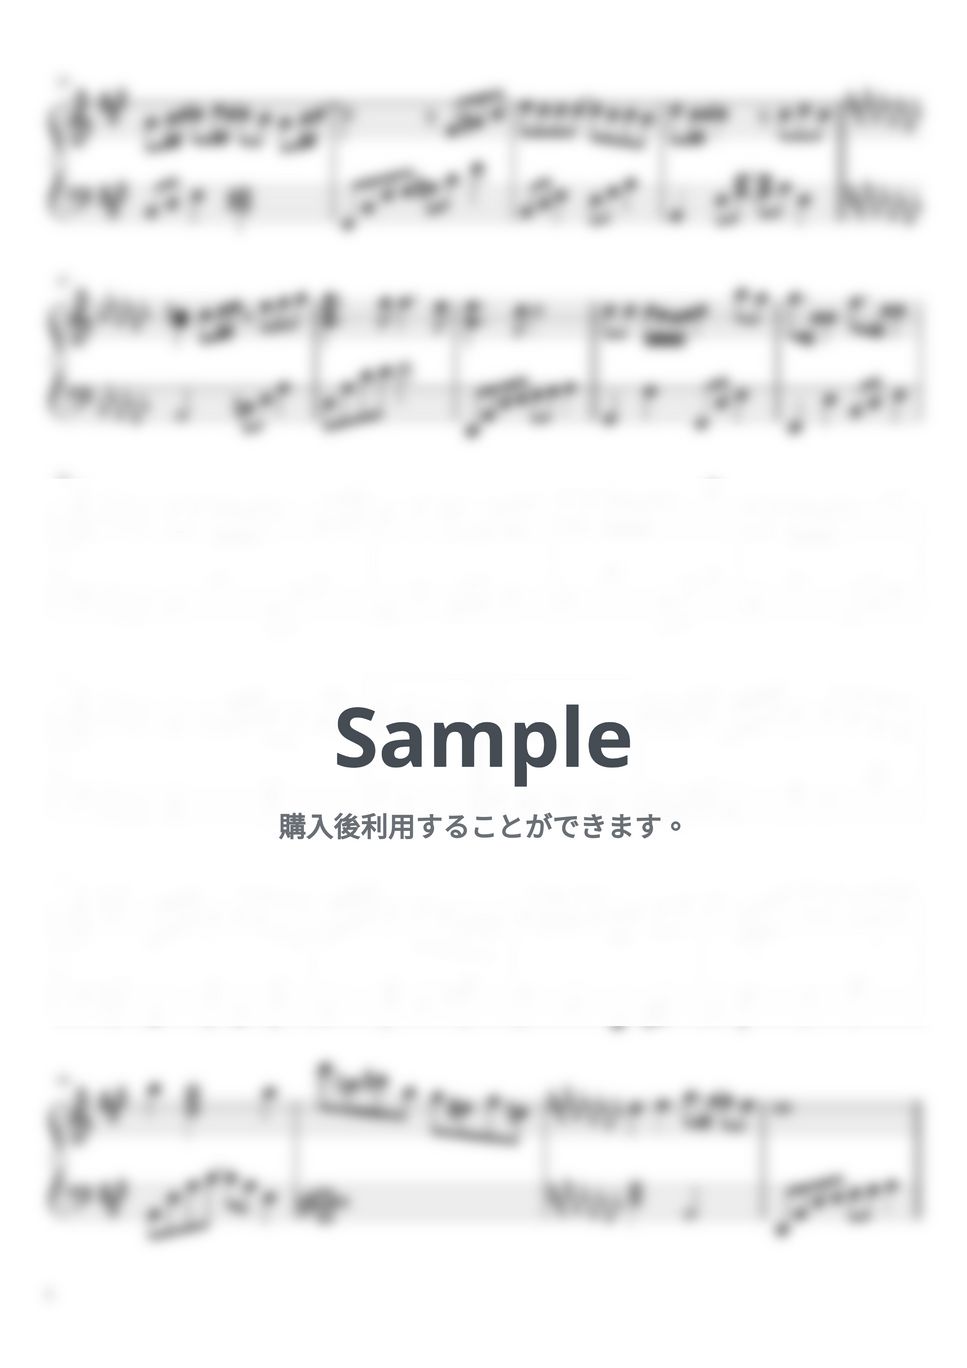 SEKAI NO OWARI - タイムマシン (ピアノソロ) by haupi